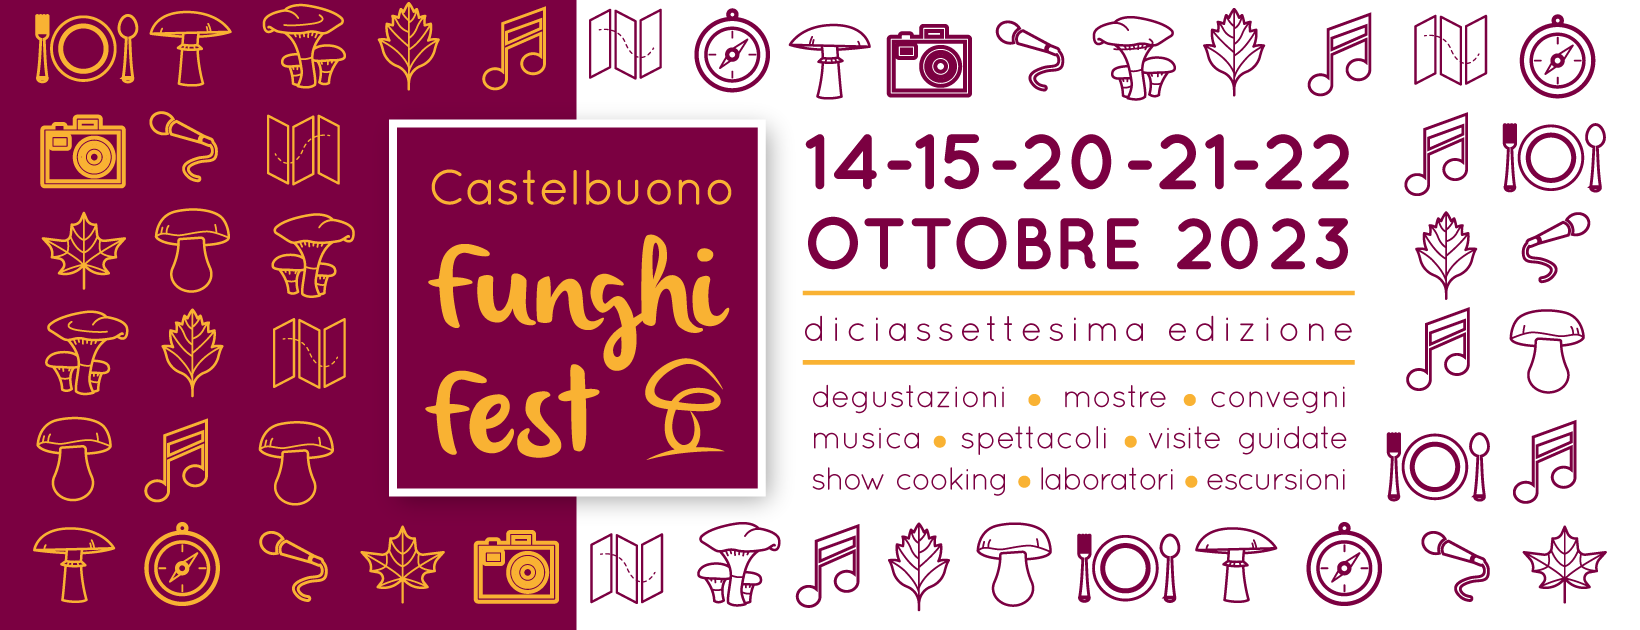 Funghi Fest Castelbuono 2023